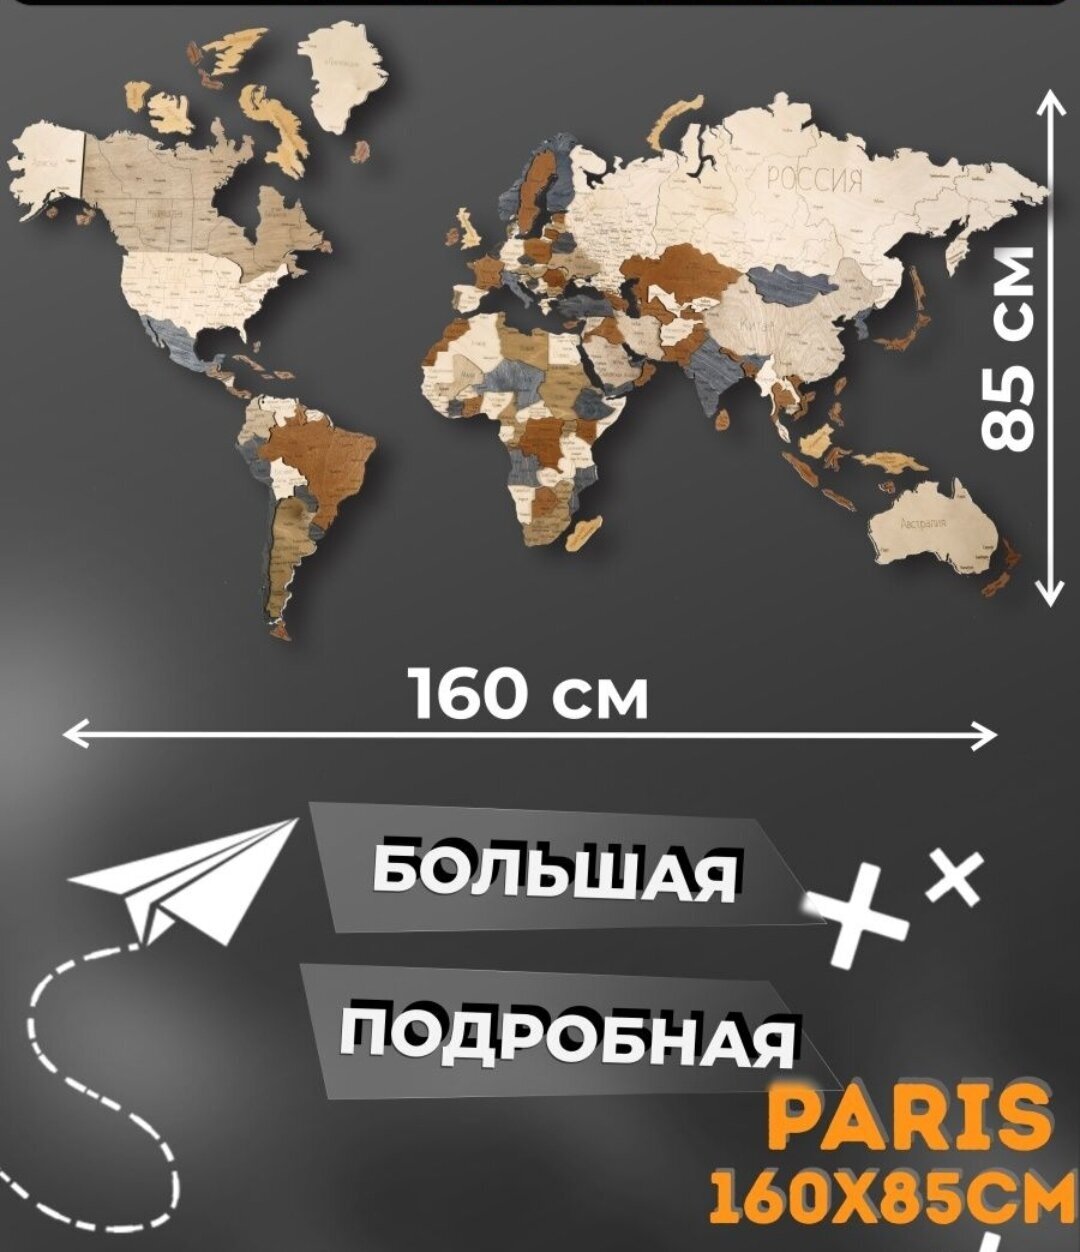 Многоуровневая карта мира 3D, 160х85, см/Географическая карта мира/ Декорация настенная/Карта мира из дерева, Paris